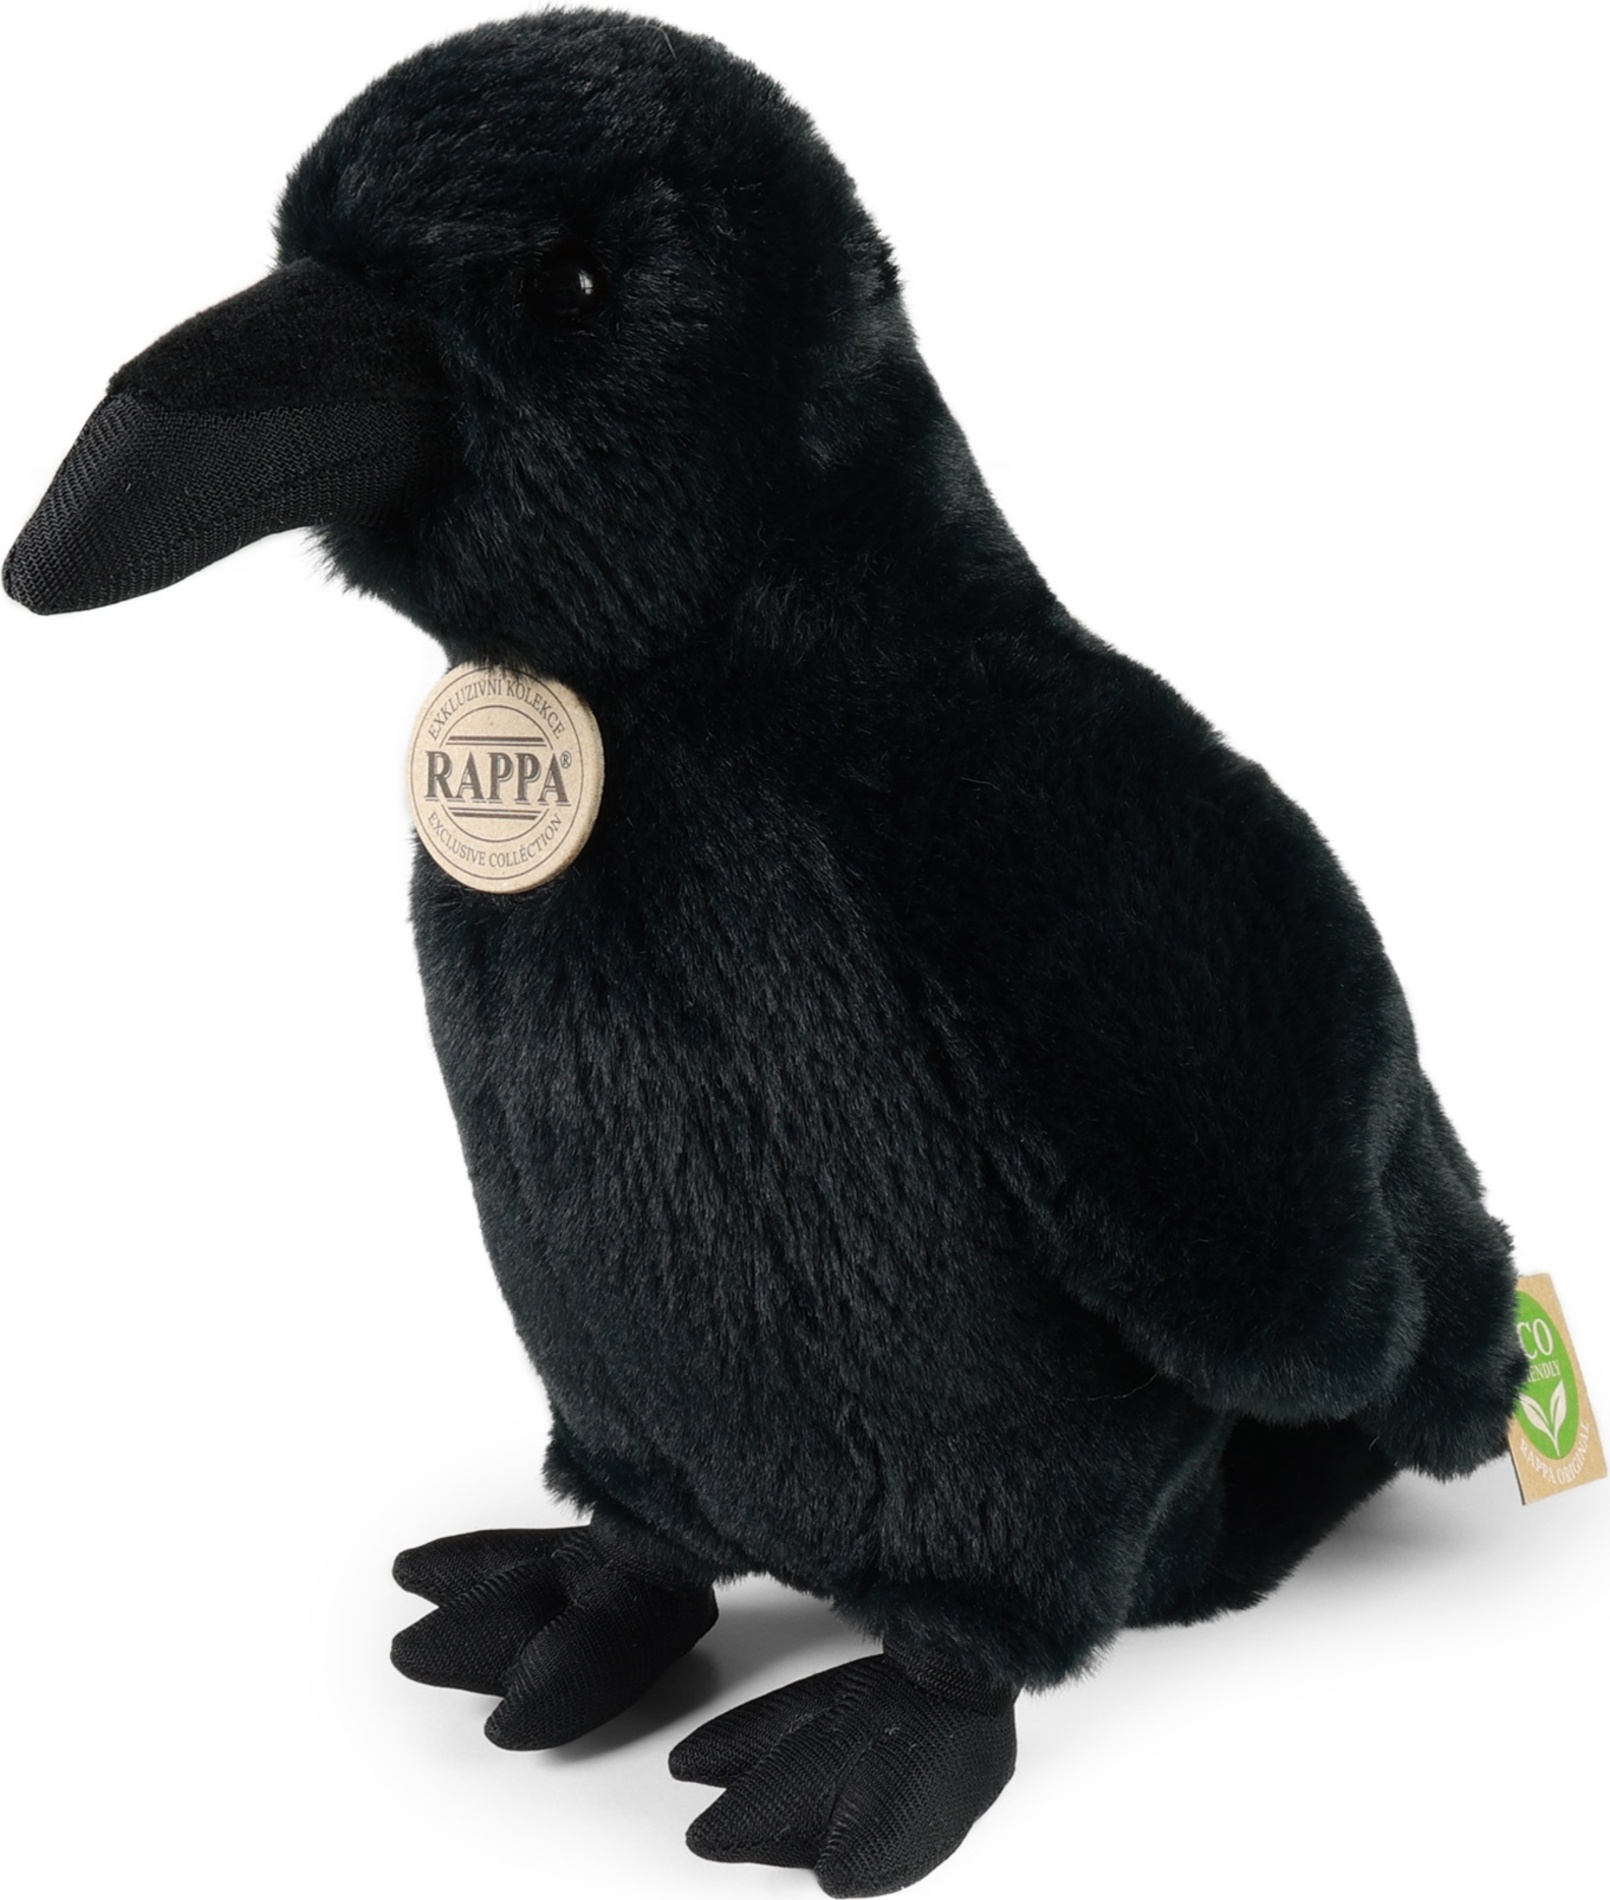 Plyšová vrána černá 25 cm ECO-FRIENDLY